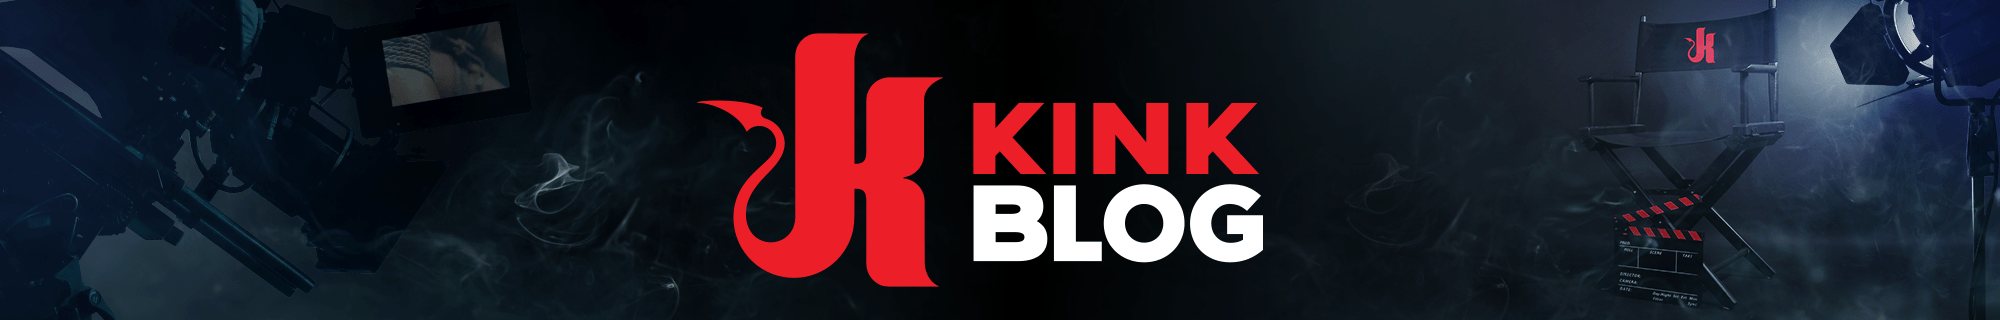 Kink Blog 